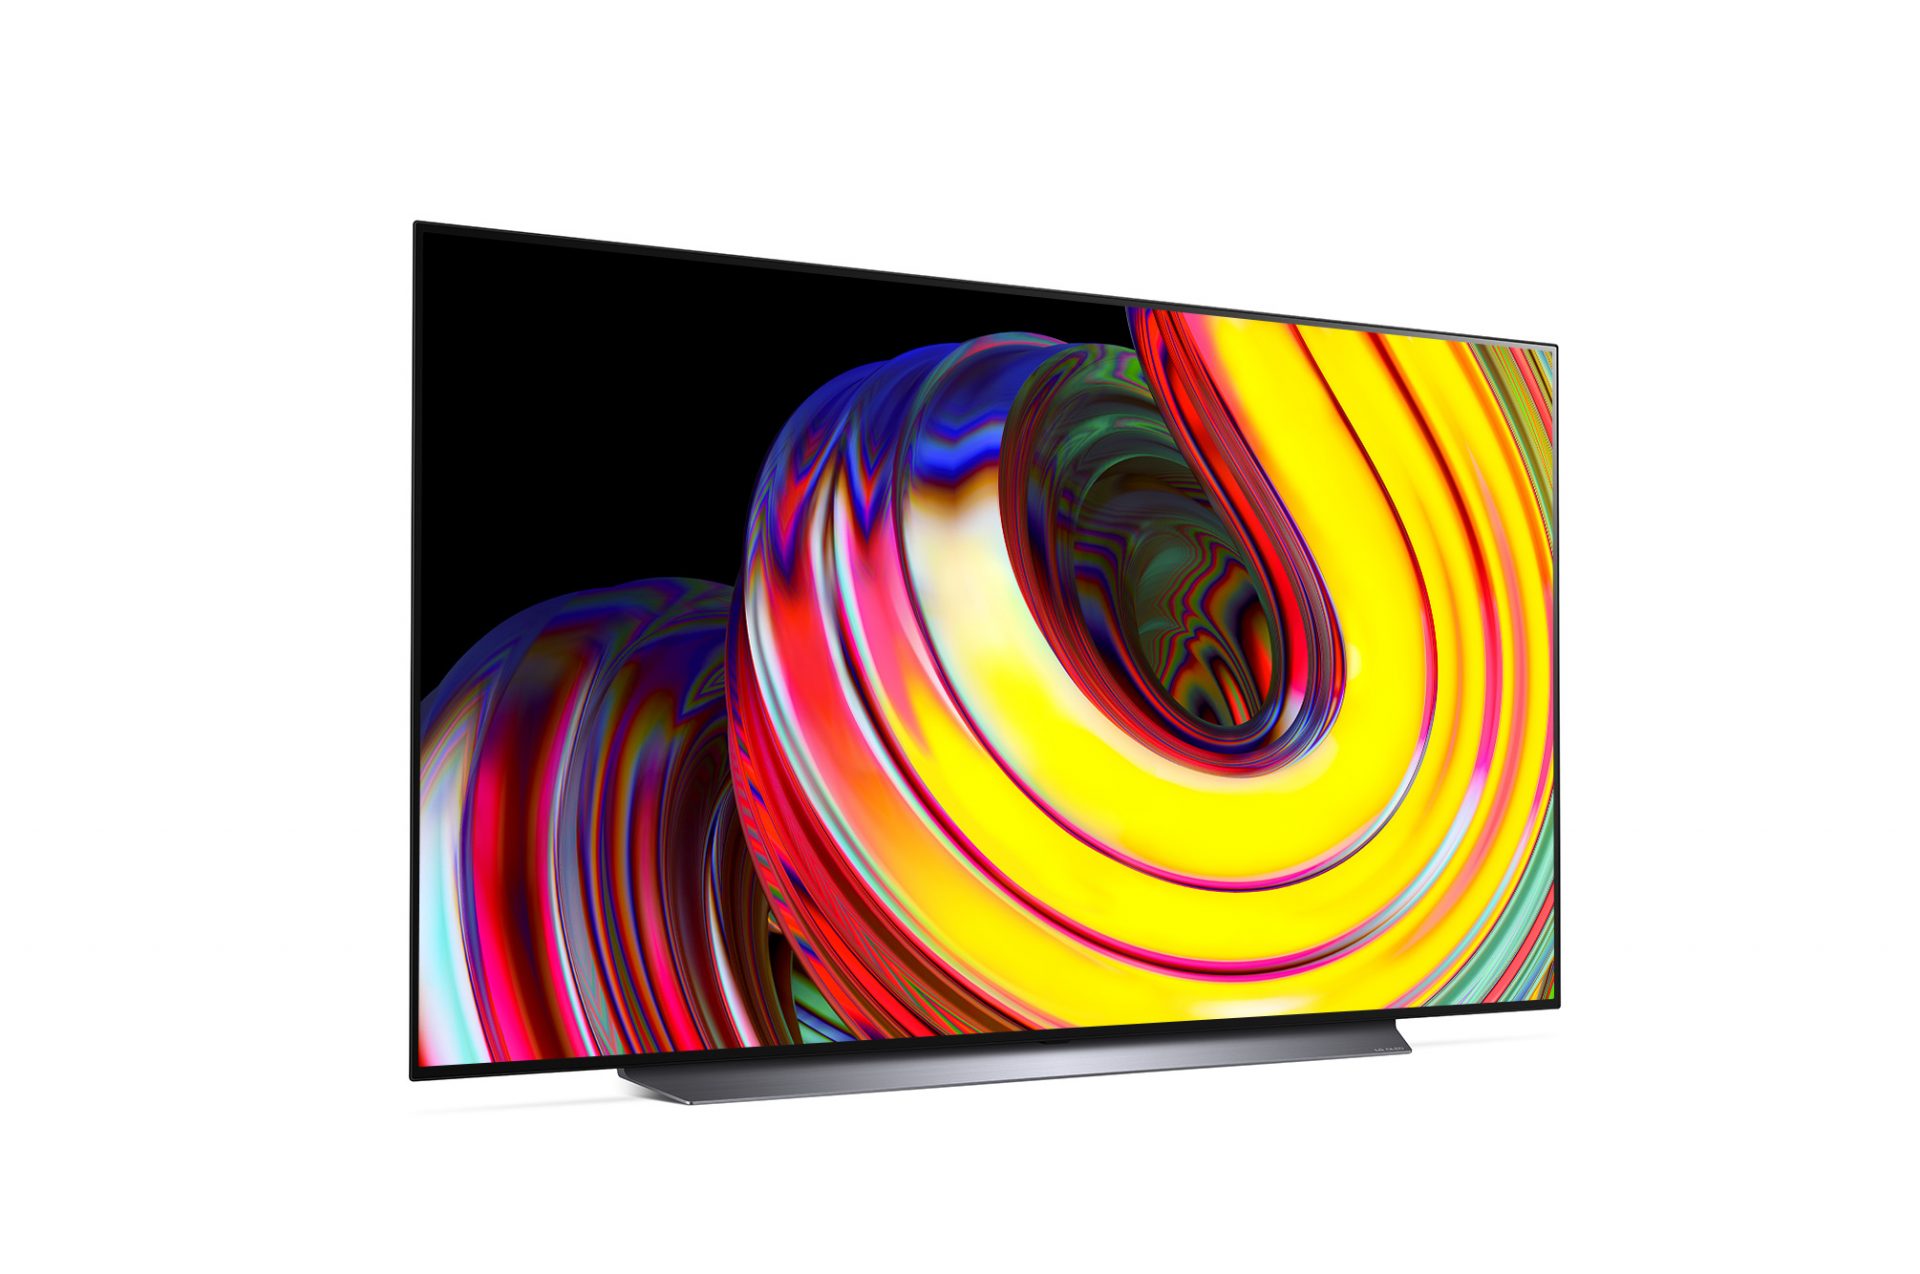 LG OLED smart TV résolution 4K 55 pouces